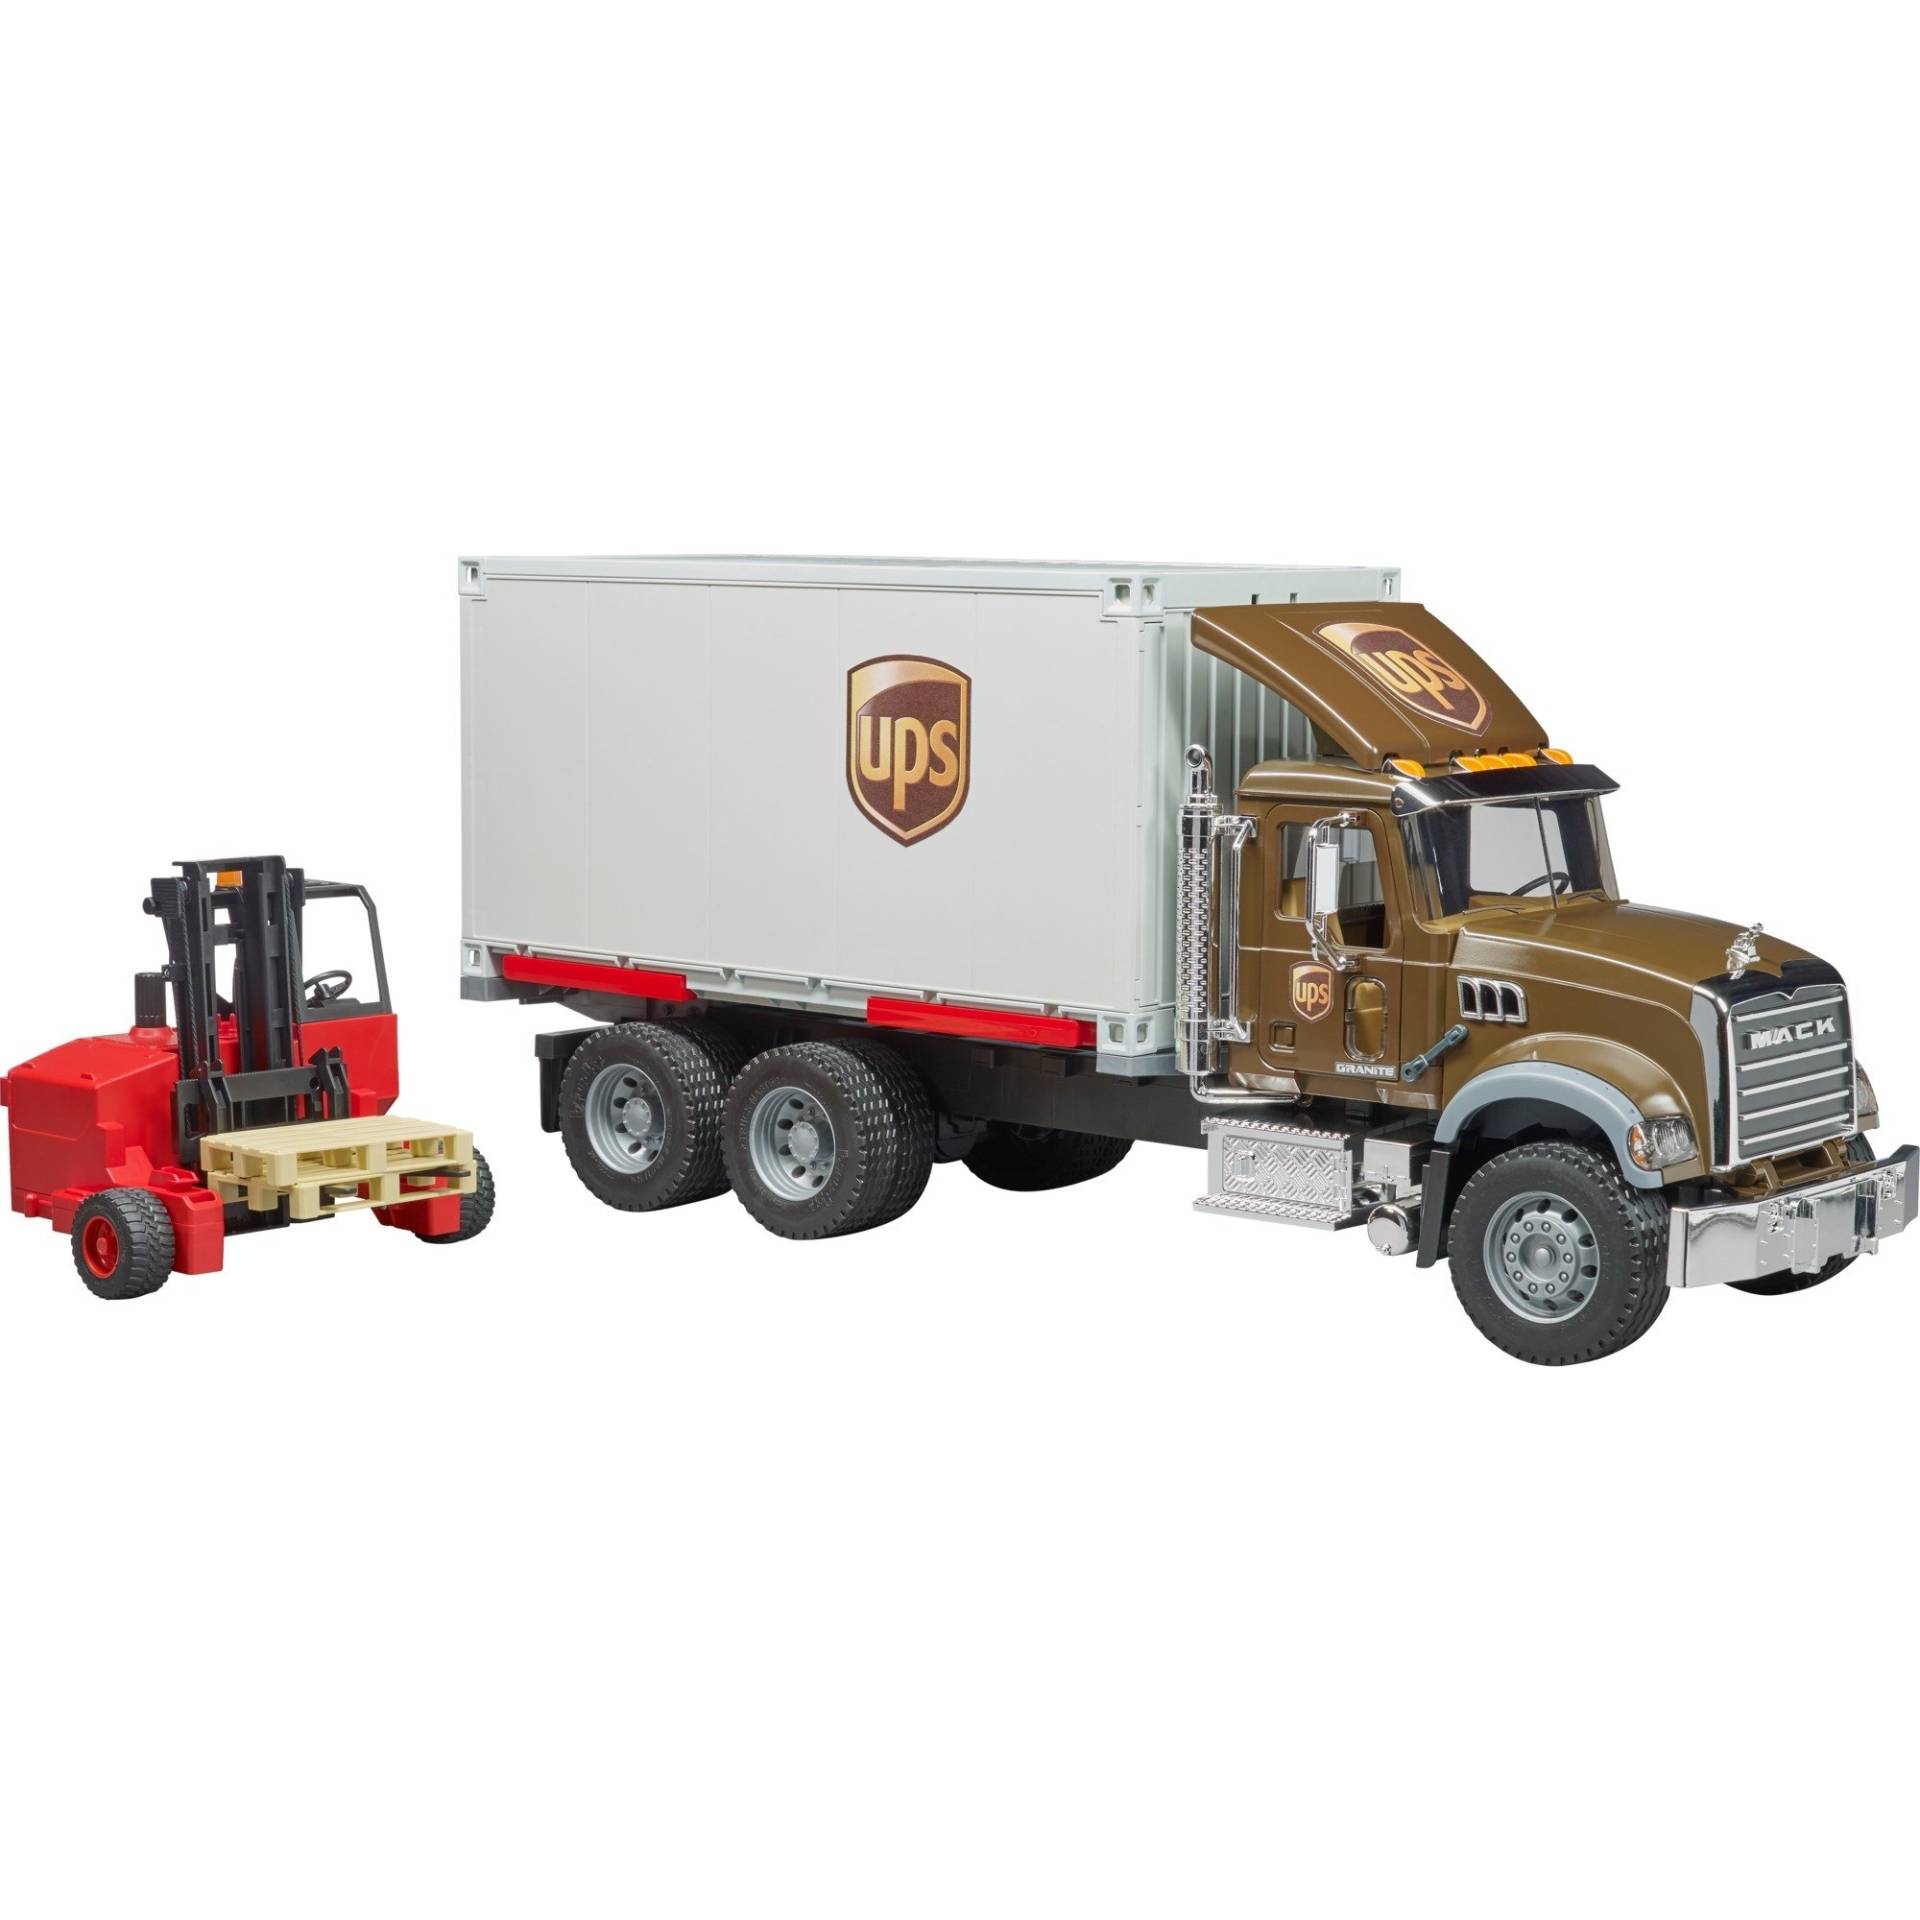 Mack Granite UPS Logistik-LKW, Modellfahrzeug von Bruder